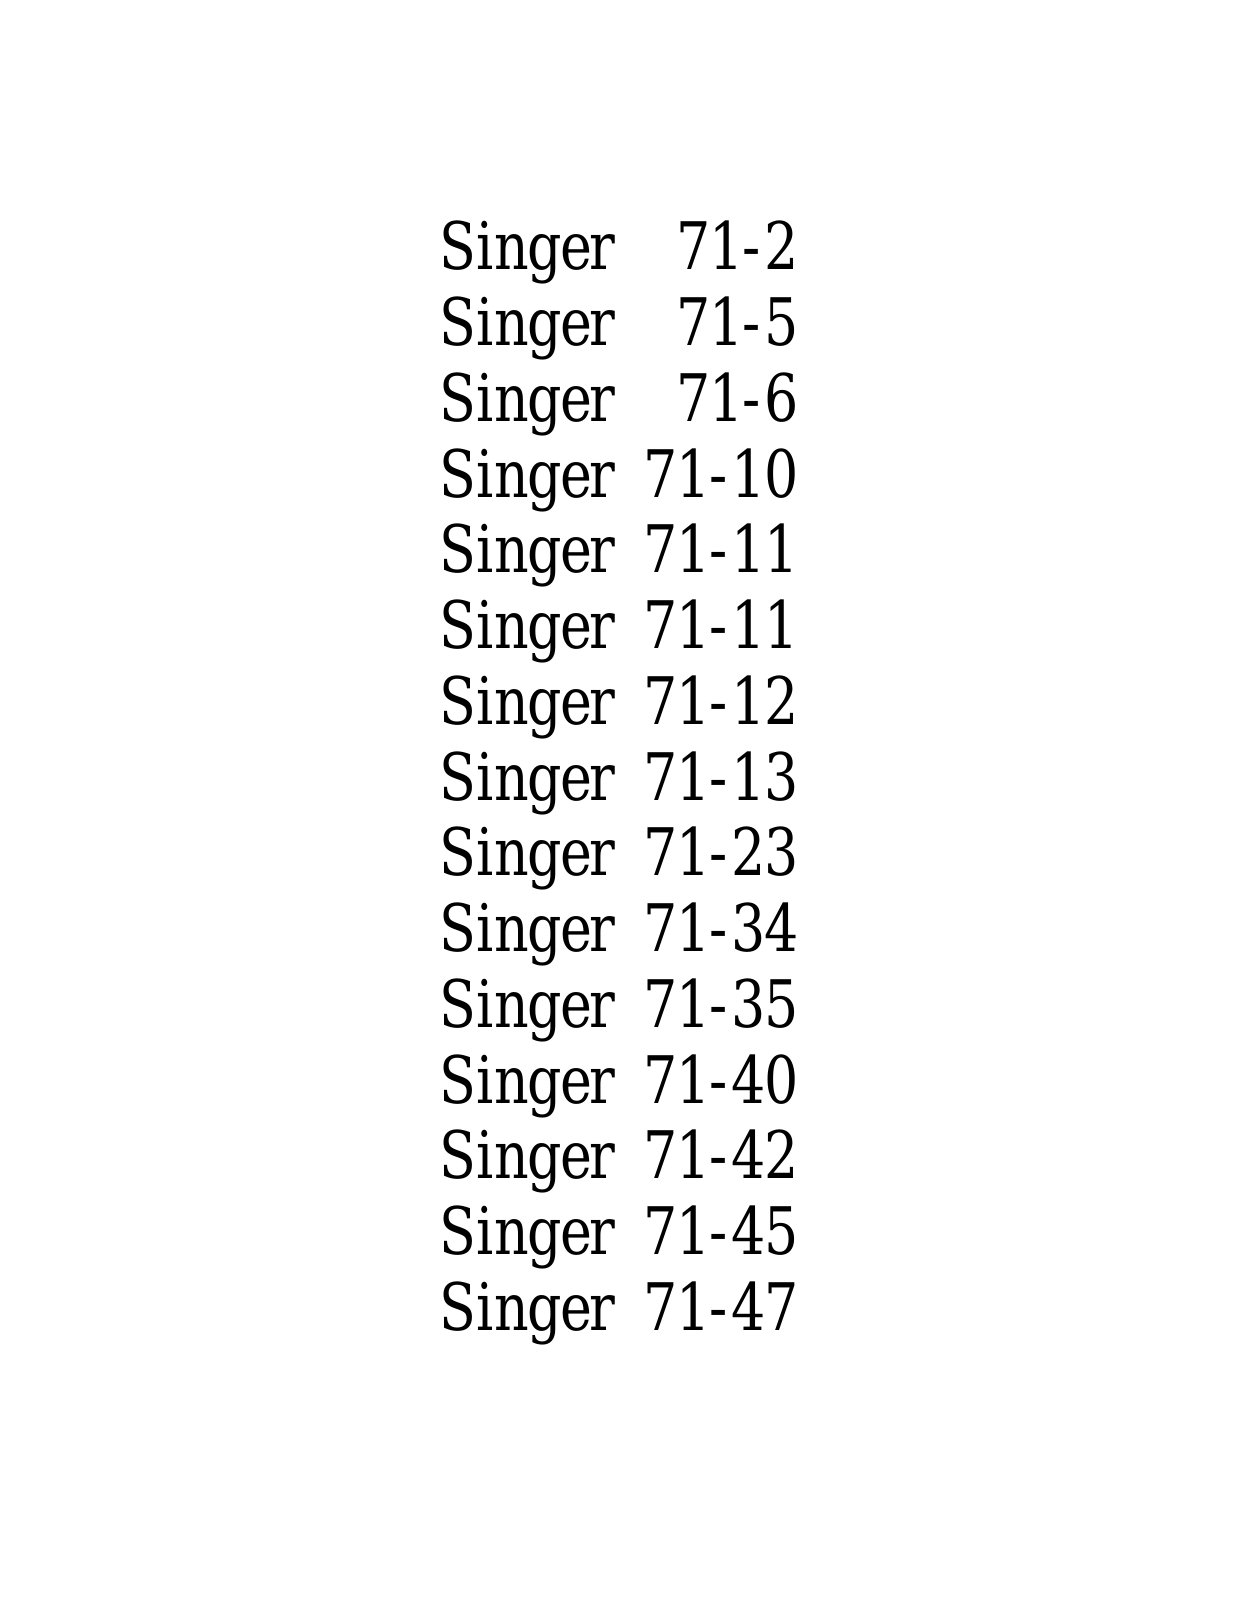 SINGER 71-2, 71-5, 71-6, 71-10, 71-11 Parts List